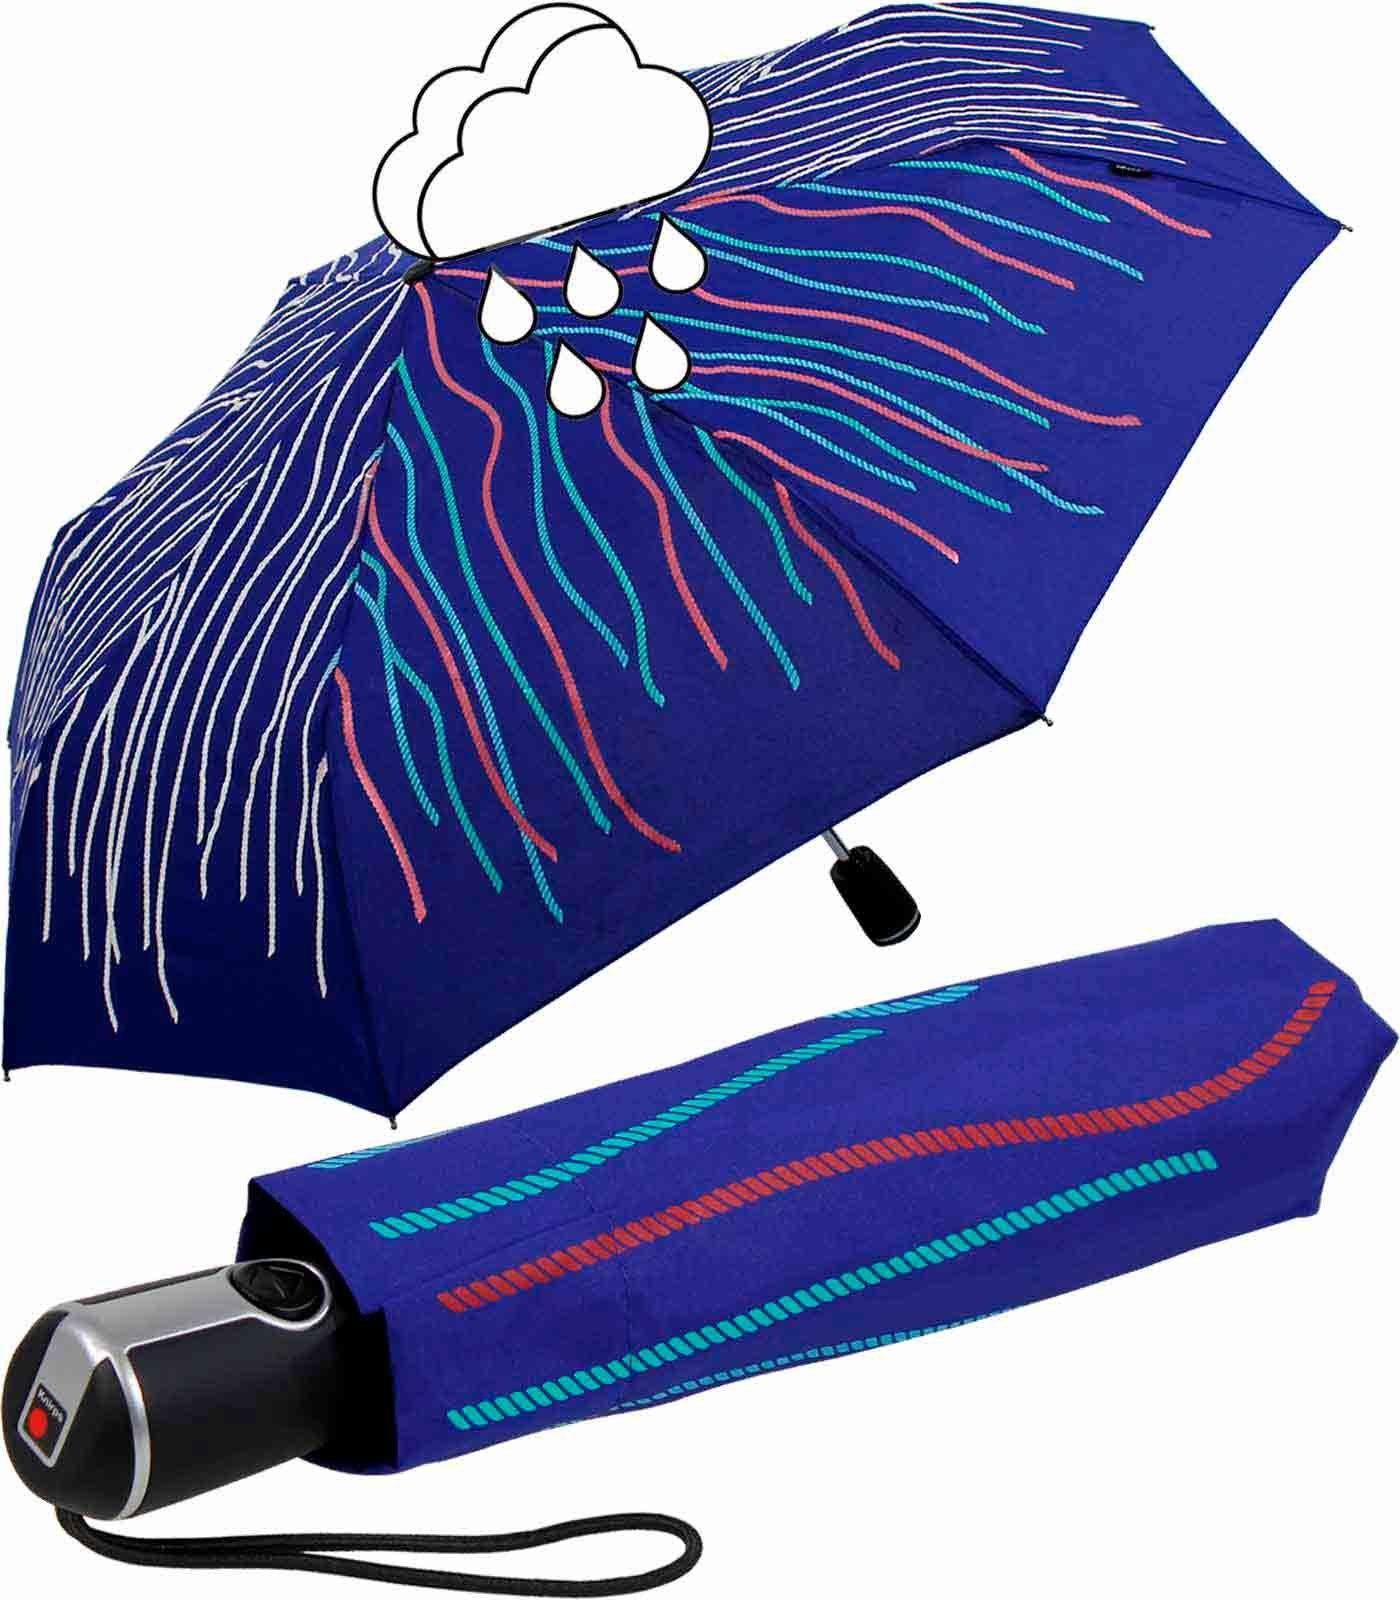 Knirps® Langregenschirm Large Duomatic bunt die Fäden - sich mit Rope, Nässe Wet bei weißen Farbwechsel Print färben